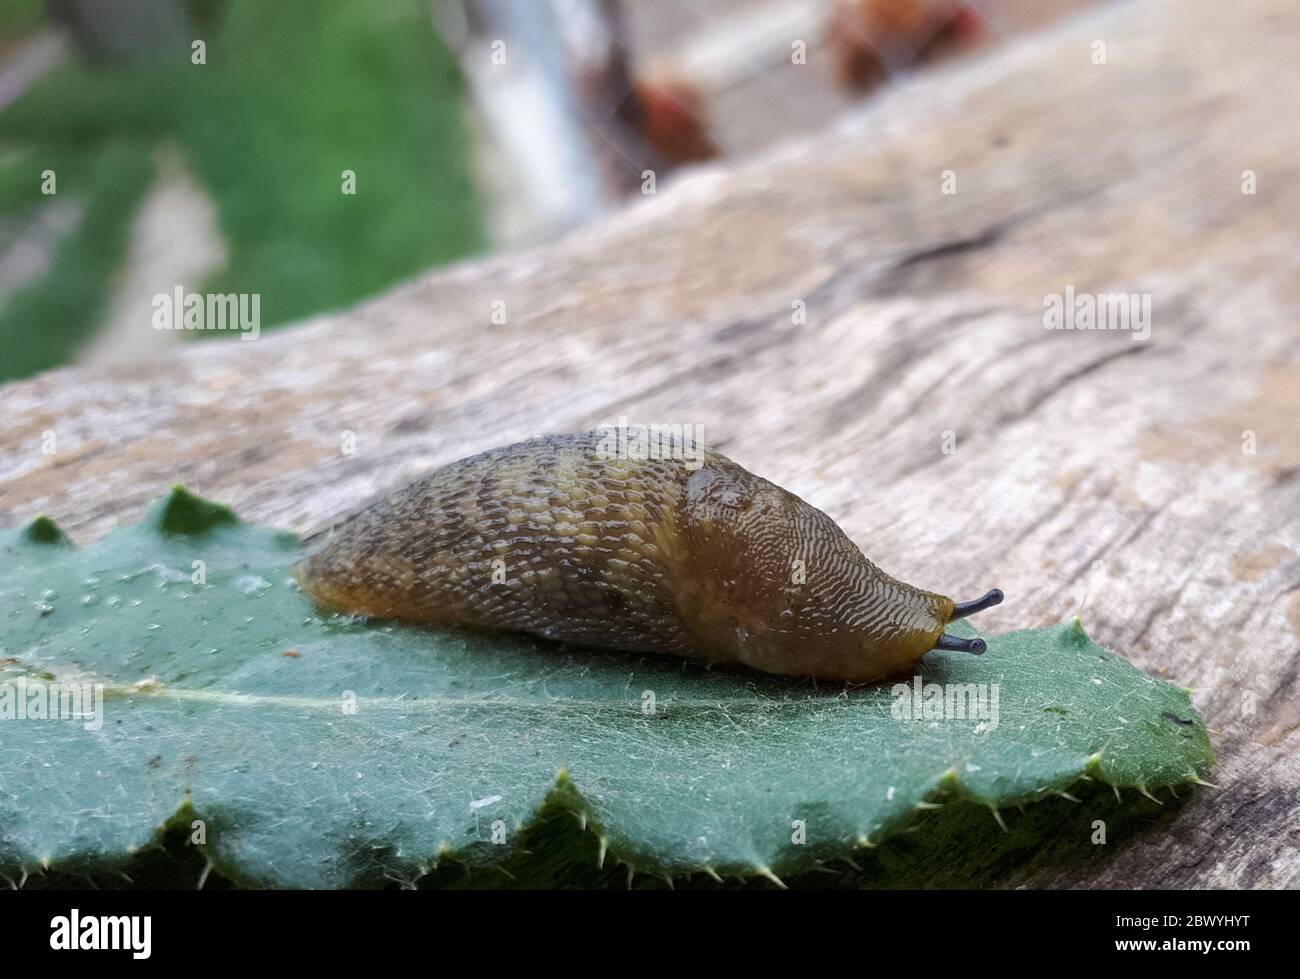 Slug on a piece of grass. clam without a slug shell. Stock Photo